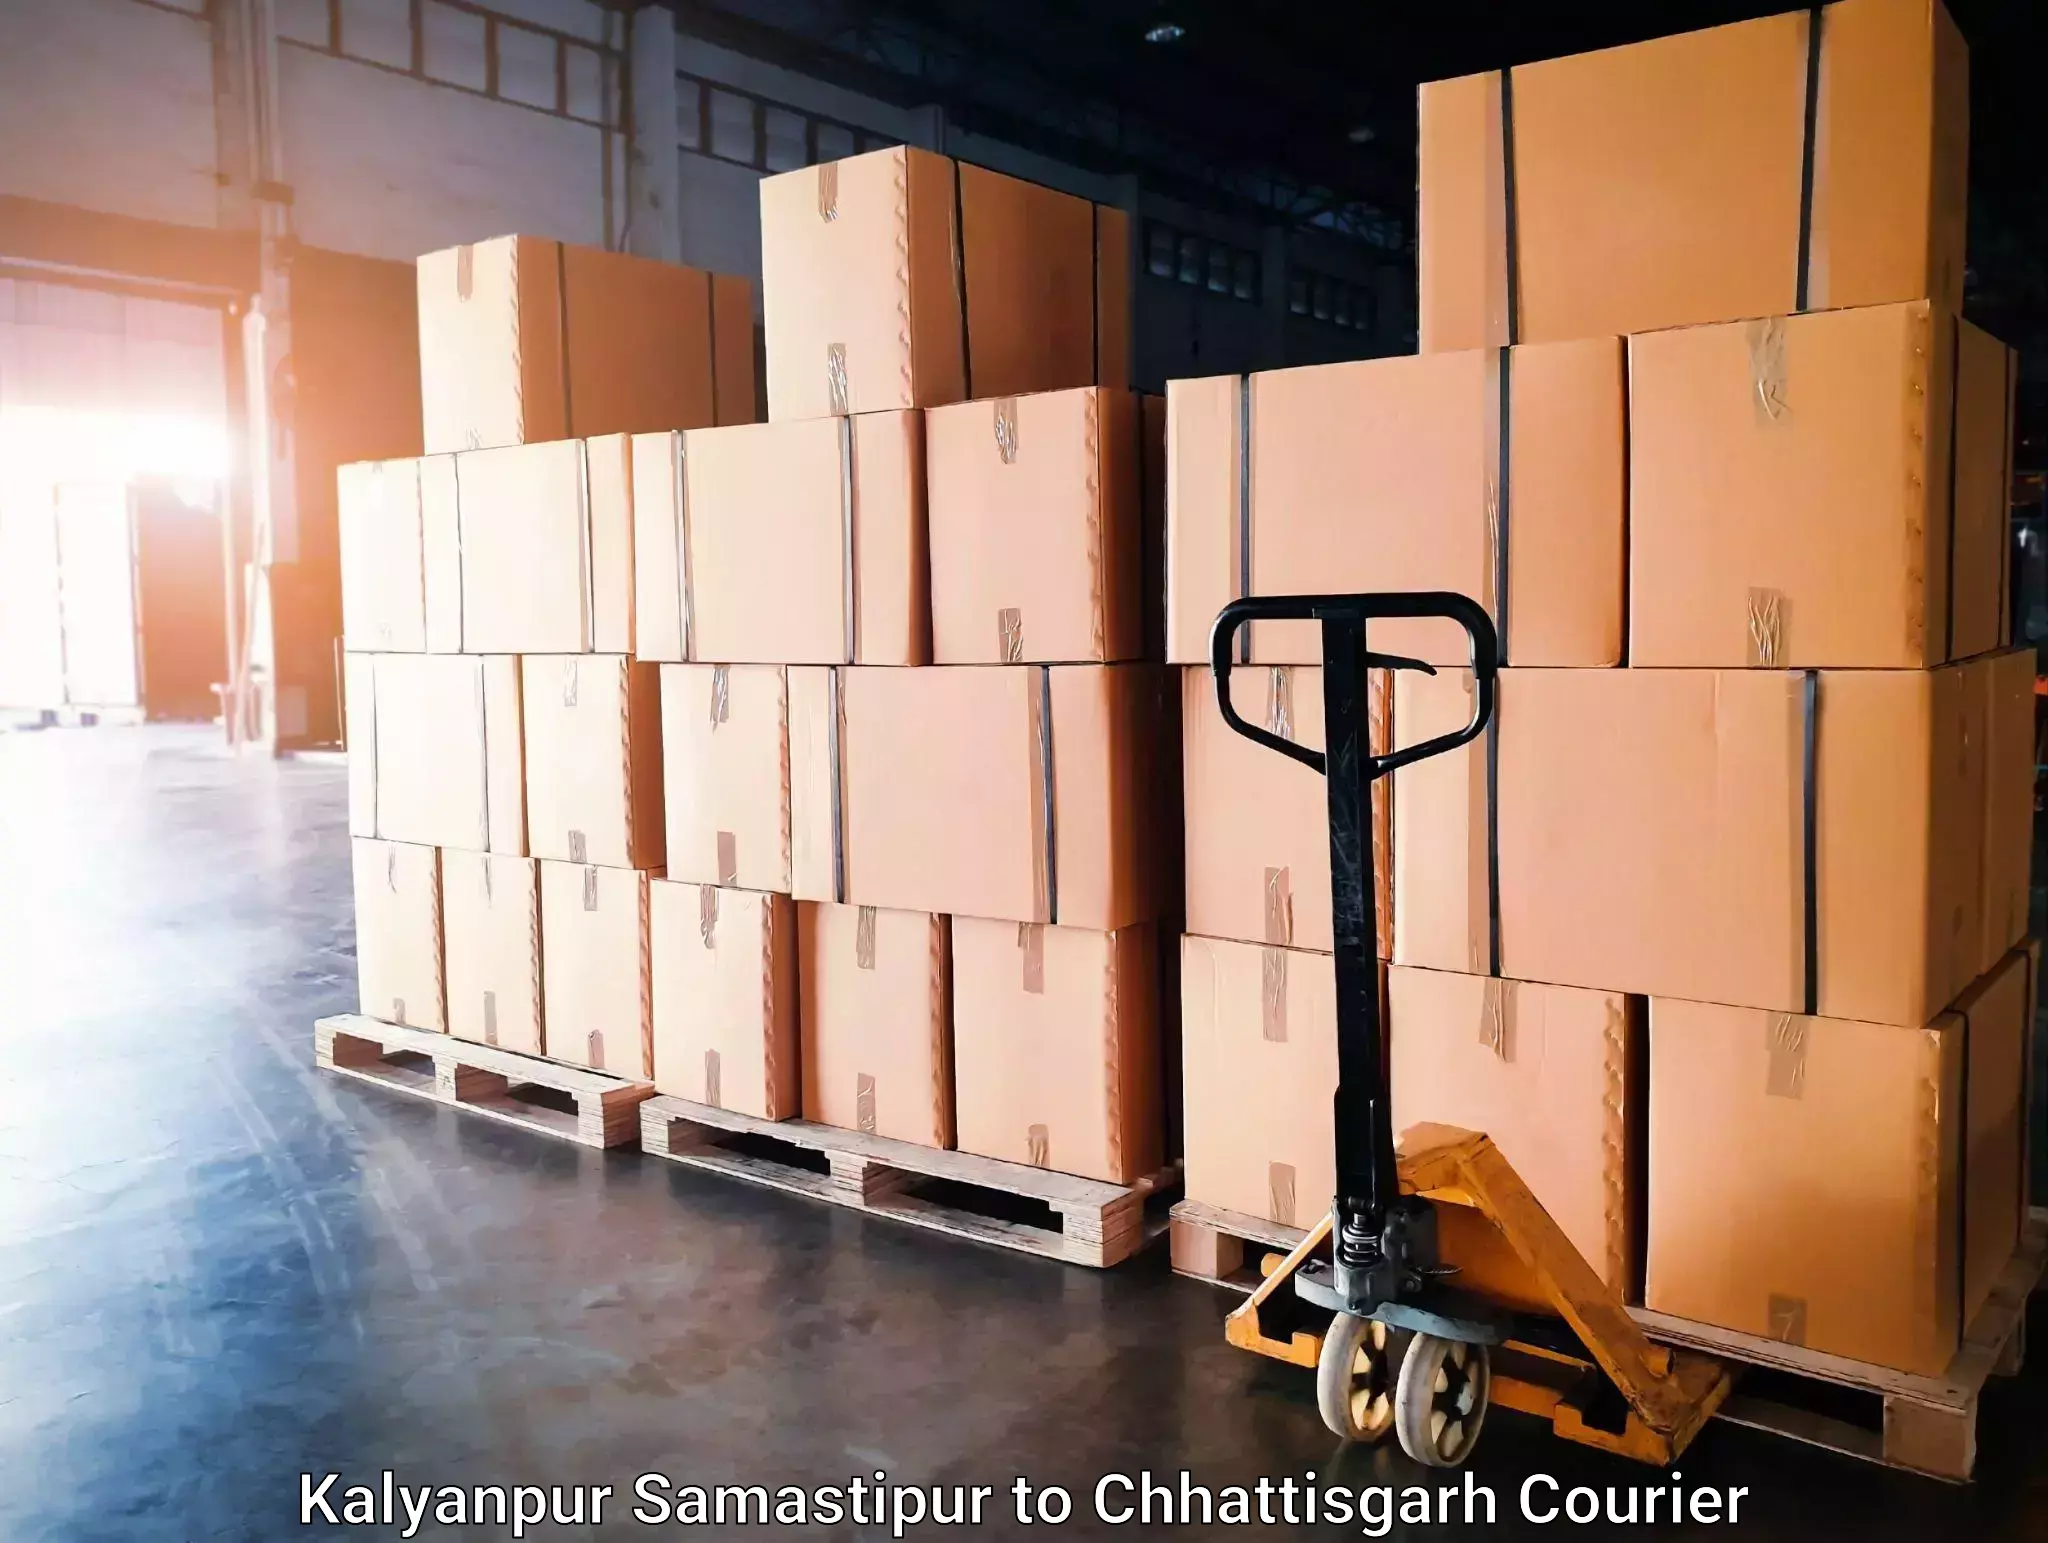 Furniture transport experts Kalyanpur Samastipur to Dhamtari